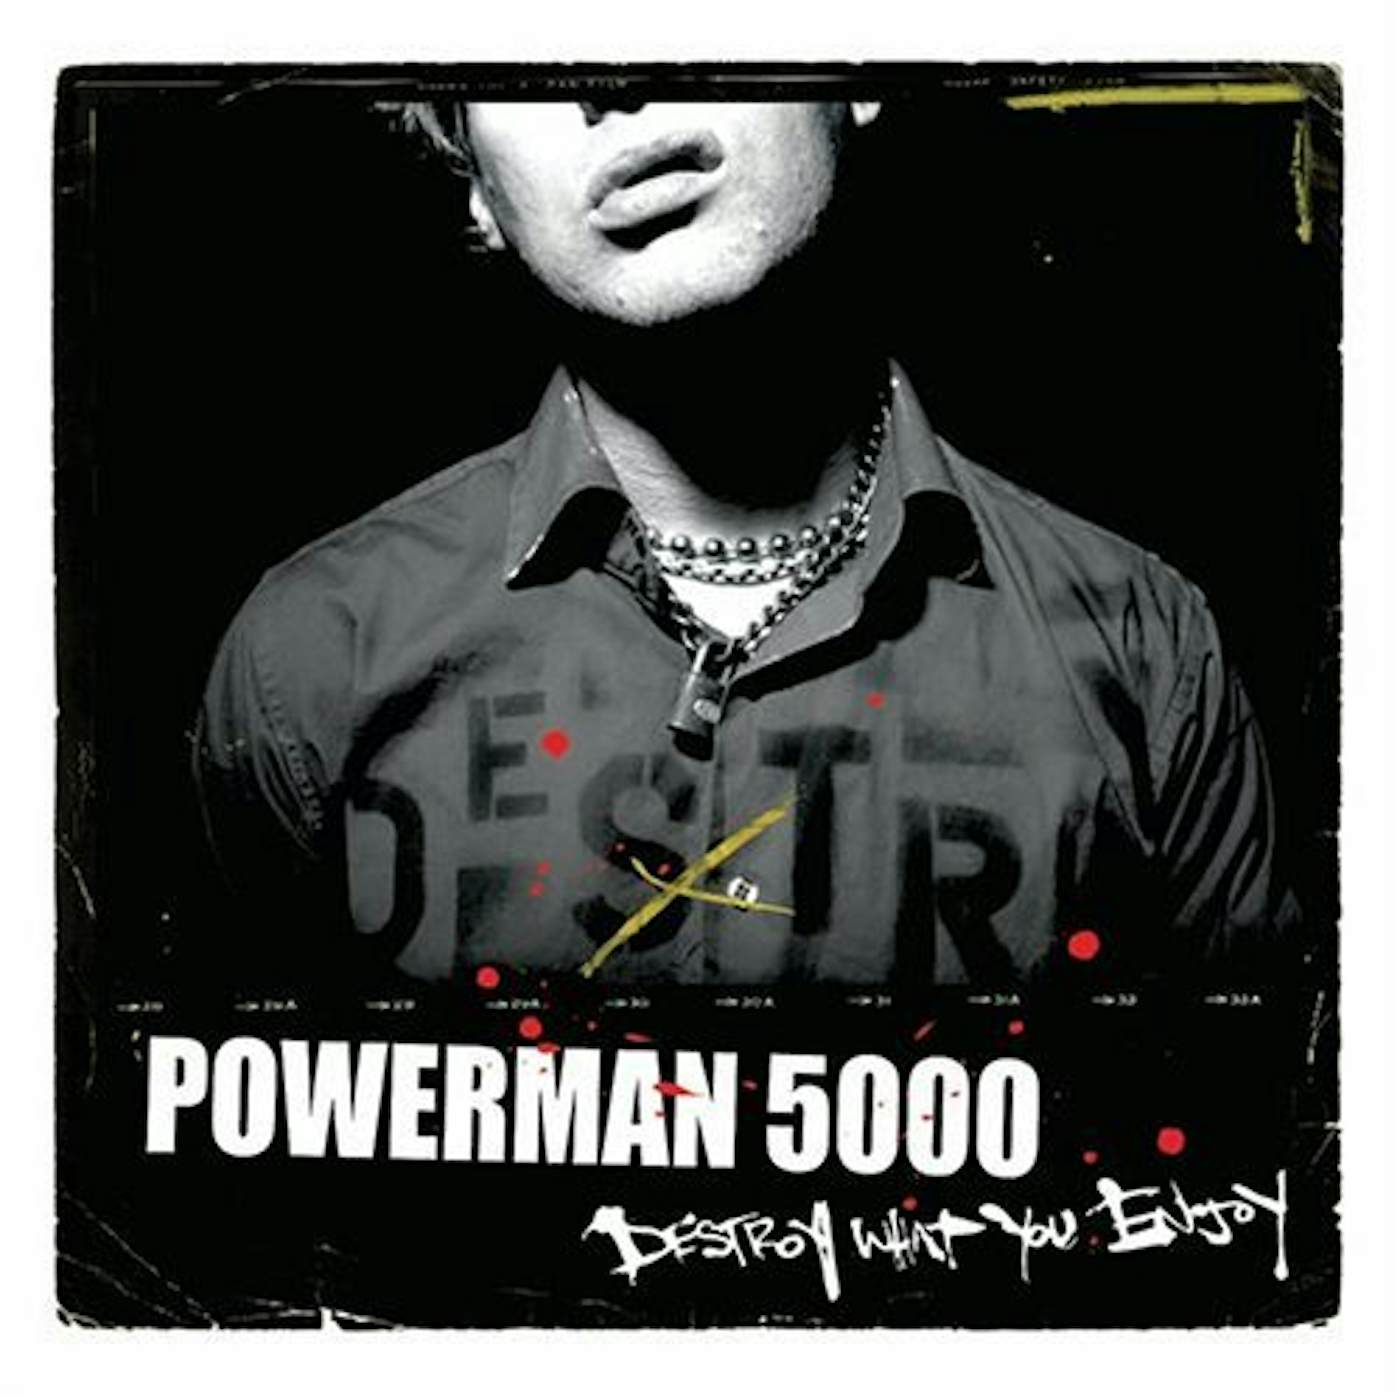 Powerman 5000 DESTROY WHAT YOU ENJOY CD